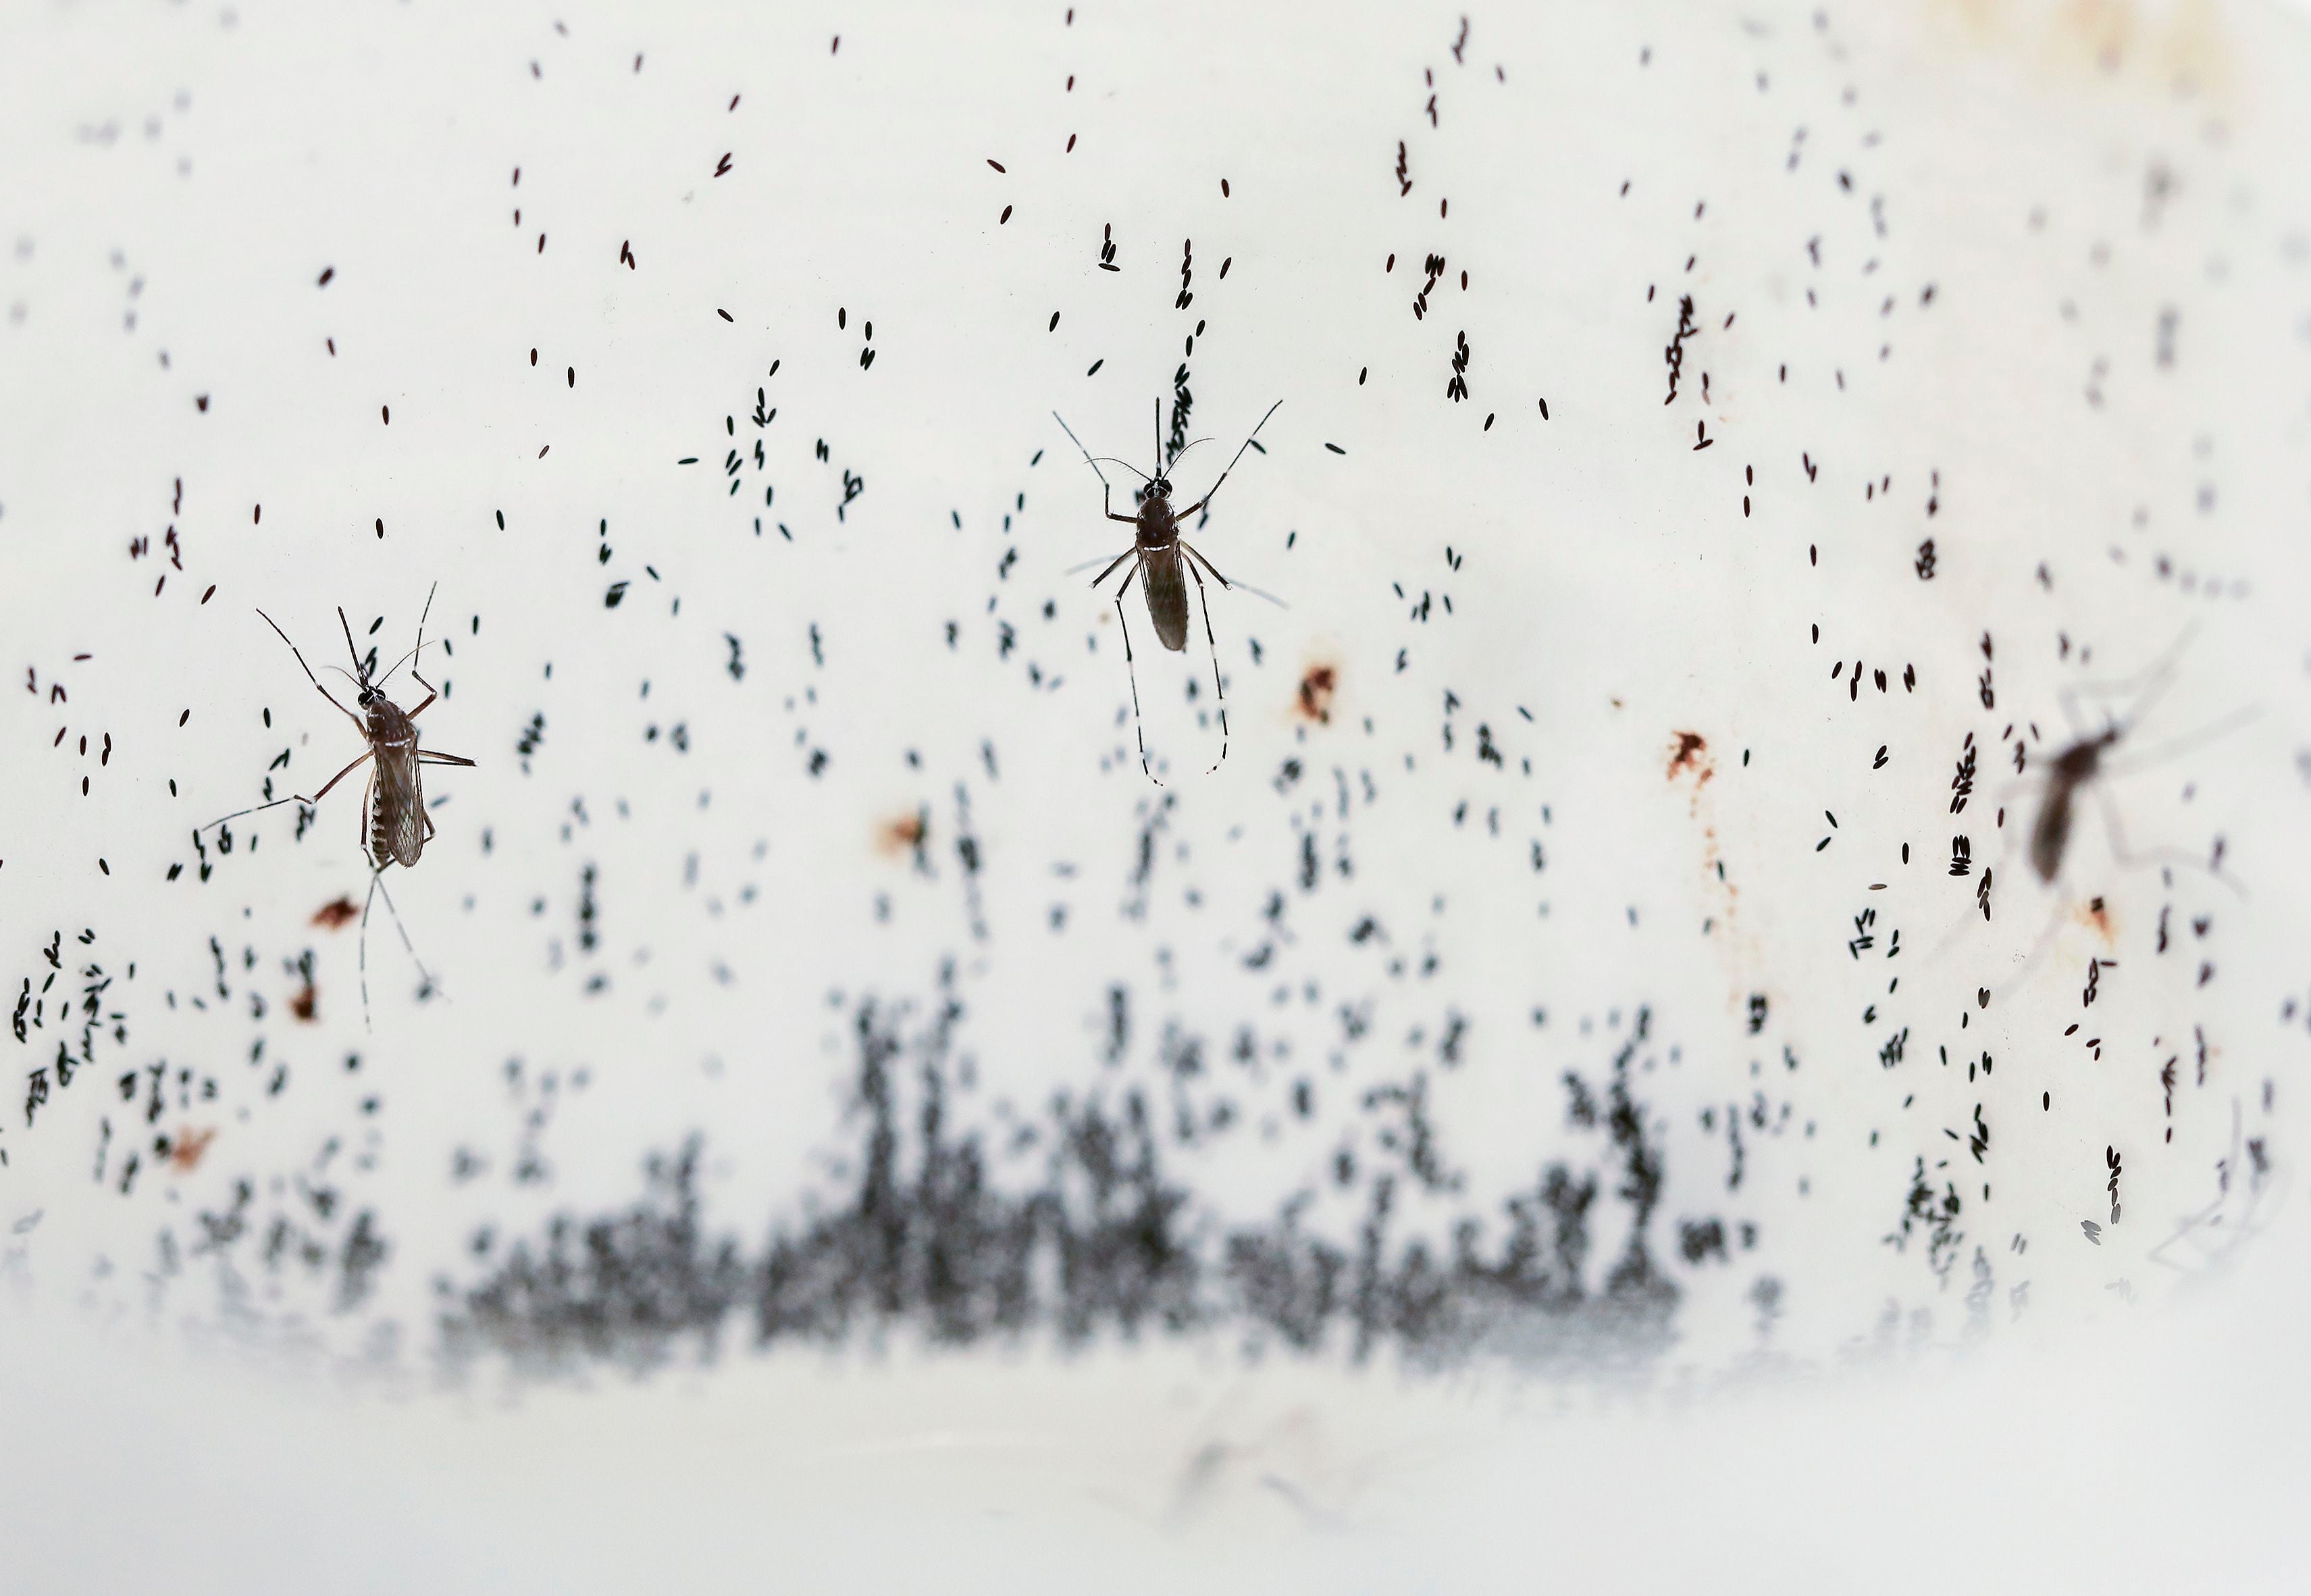 La enfermedad puede evolucionar a un dengue grave, caracterizado por dificultad para respirar, sangrado severo y/o complicaciones en los órganos
(AP Foto/Jaime Saldarriaga)